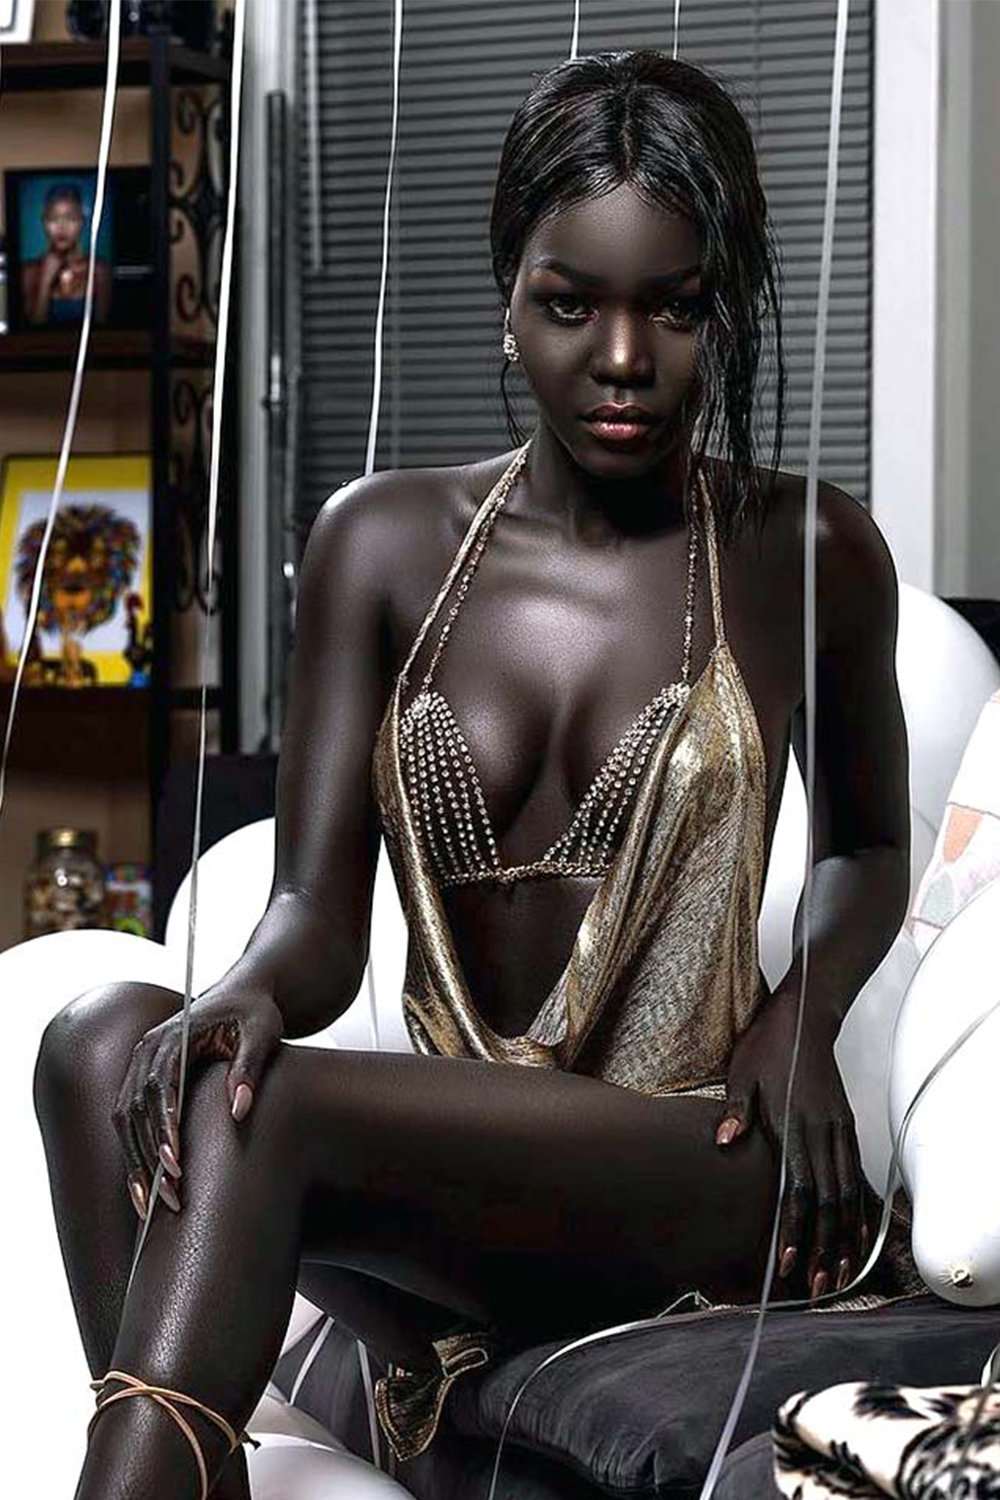 Проверенные негритянки. Няким Гатвеч. Нуаким Гатвеч модель из Южного Судана. Королева тьмы модель из Южного Судана Ньяким. Nyakim Gatwech (Ньяким Гатвеч) - 24-летняя модель.